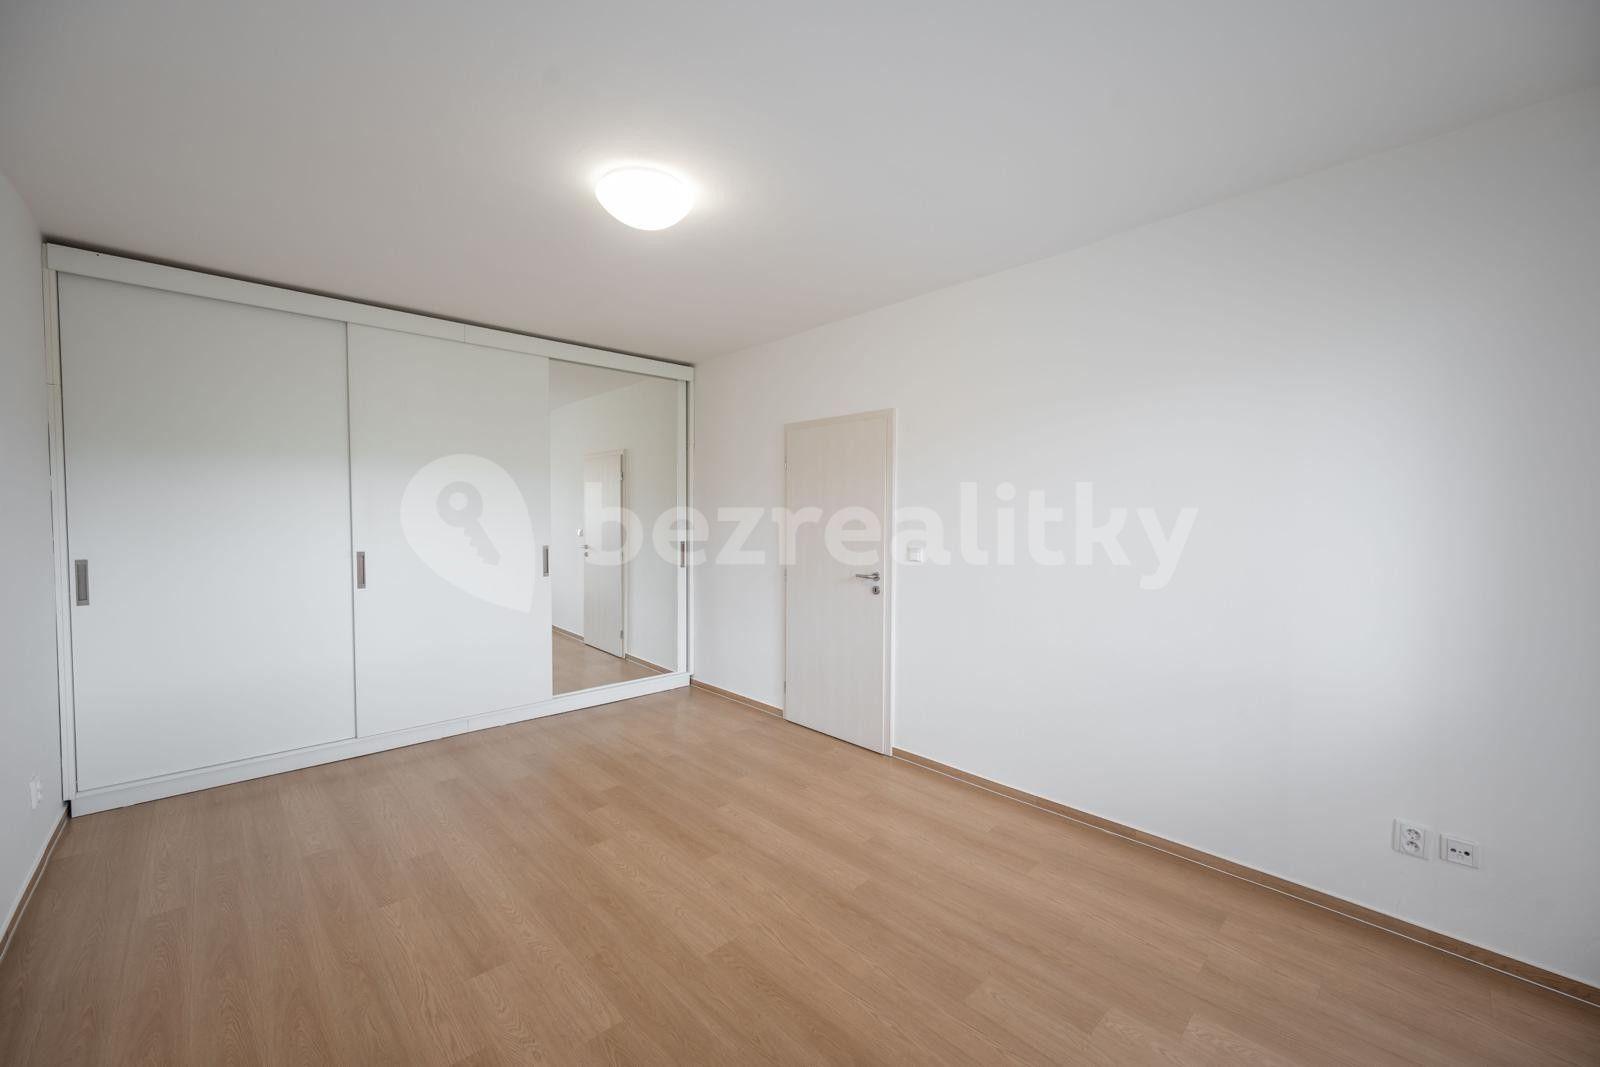 3 bedroom flat for sale, 76 m², Družstevní, Uherský Brod, Zlínský Region